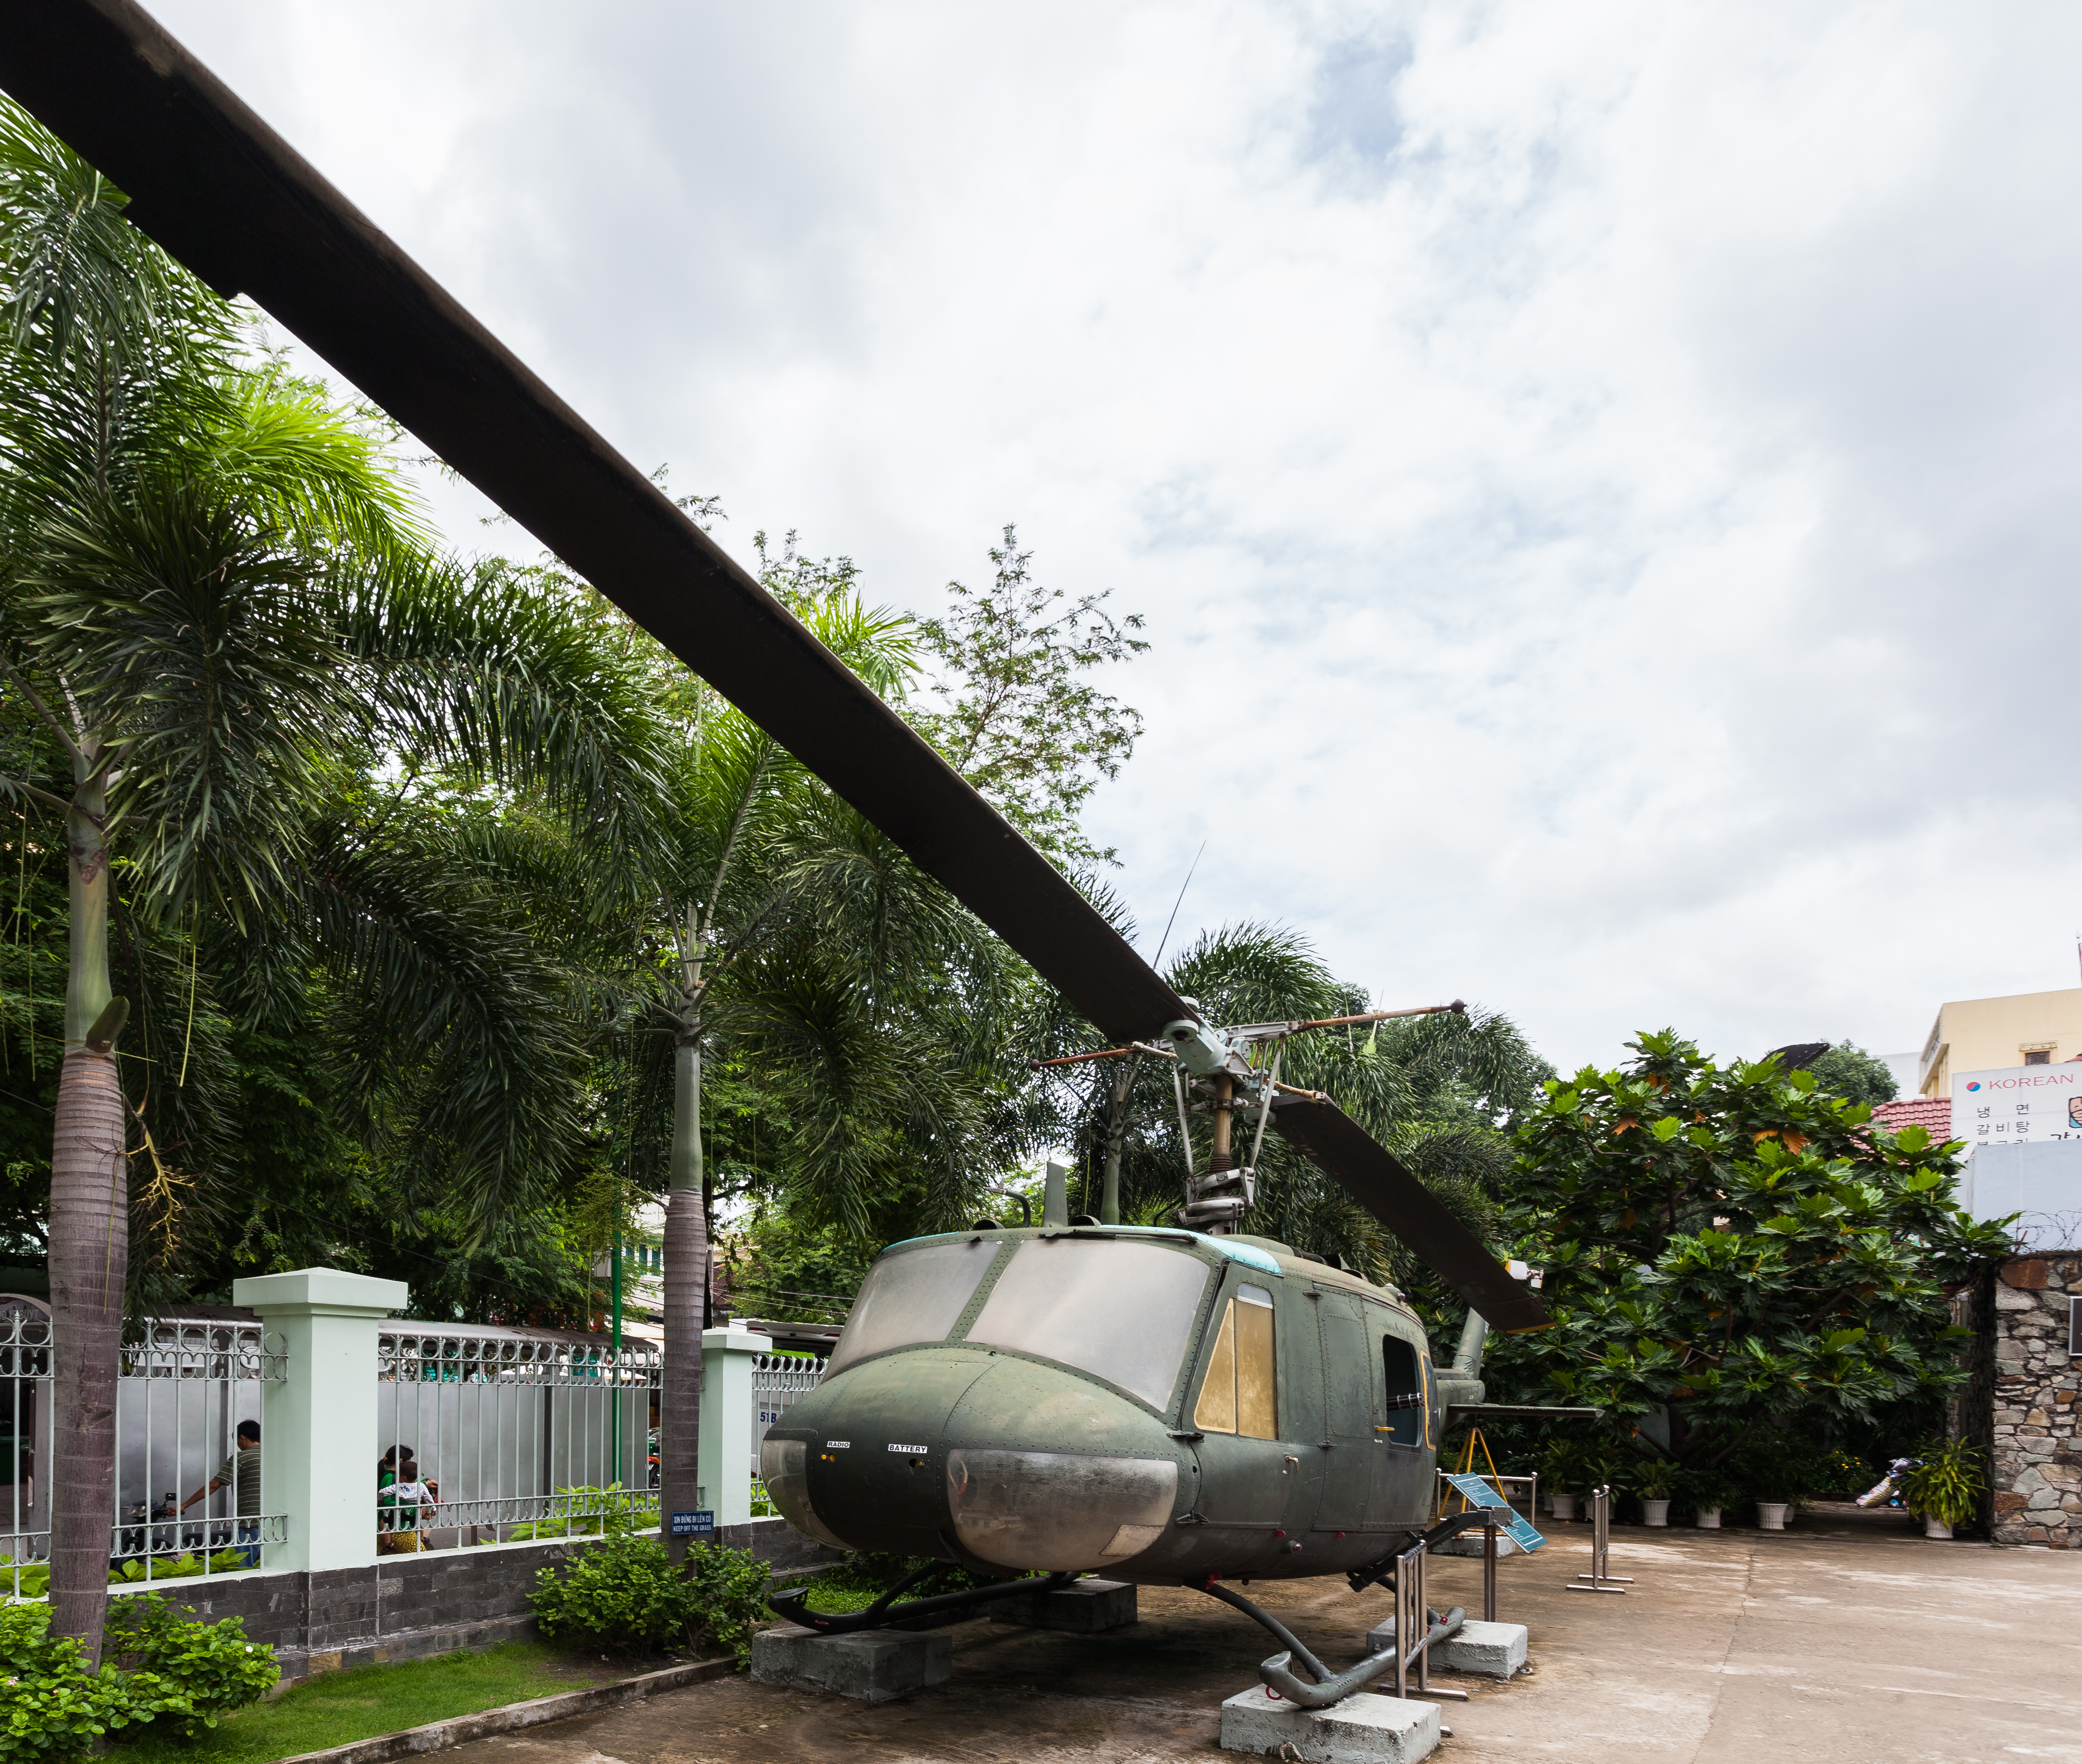 Helicóptero UH-1H Huey, Museo de los Vestigios de la Guerra de Vietnam, Ciudad Ho Chi Minh, Vietnam, 2013-08-14, DD 02